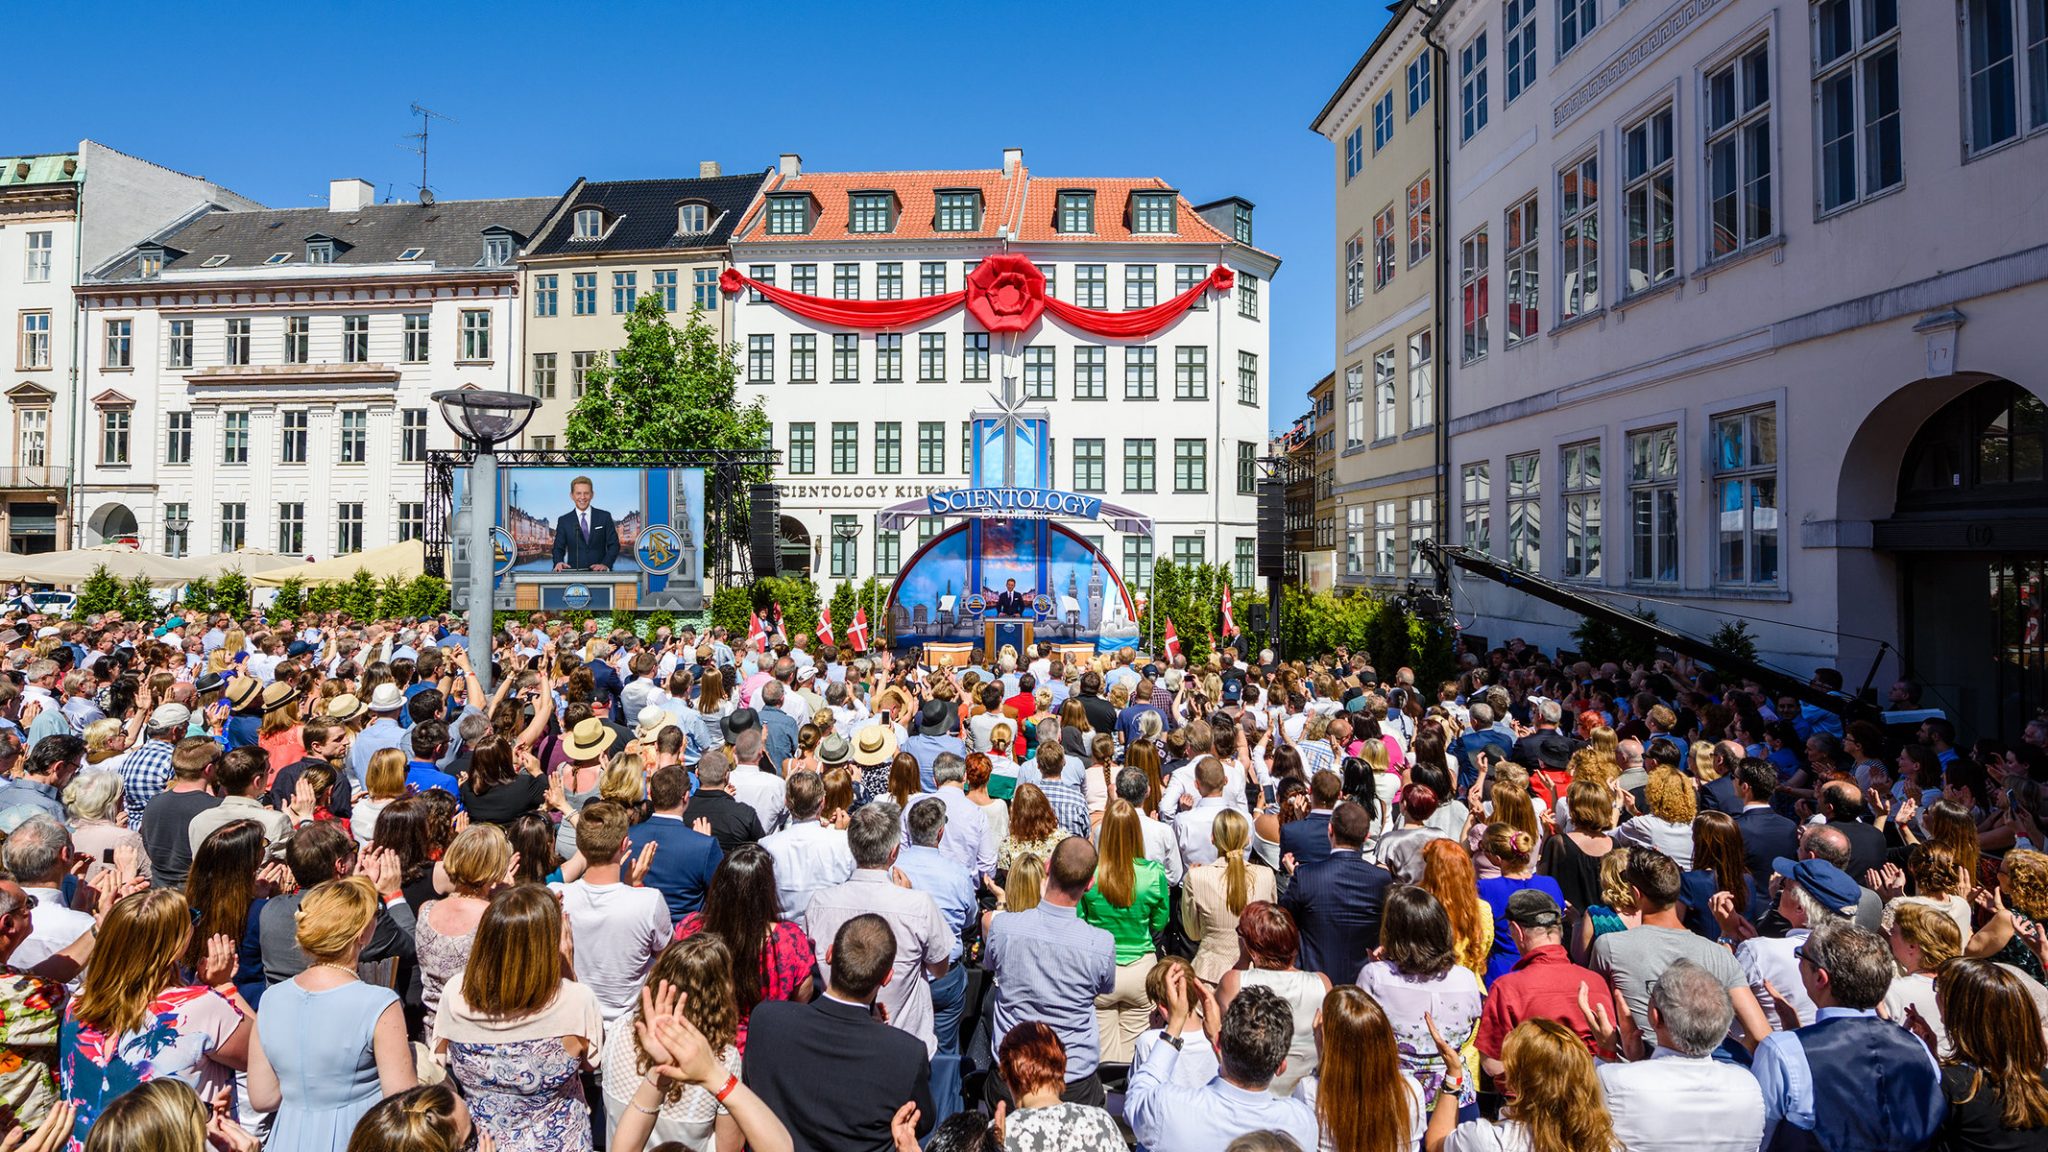 Une nouvelle Eglise de Scientologie est née au centre de Copenhague